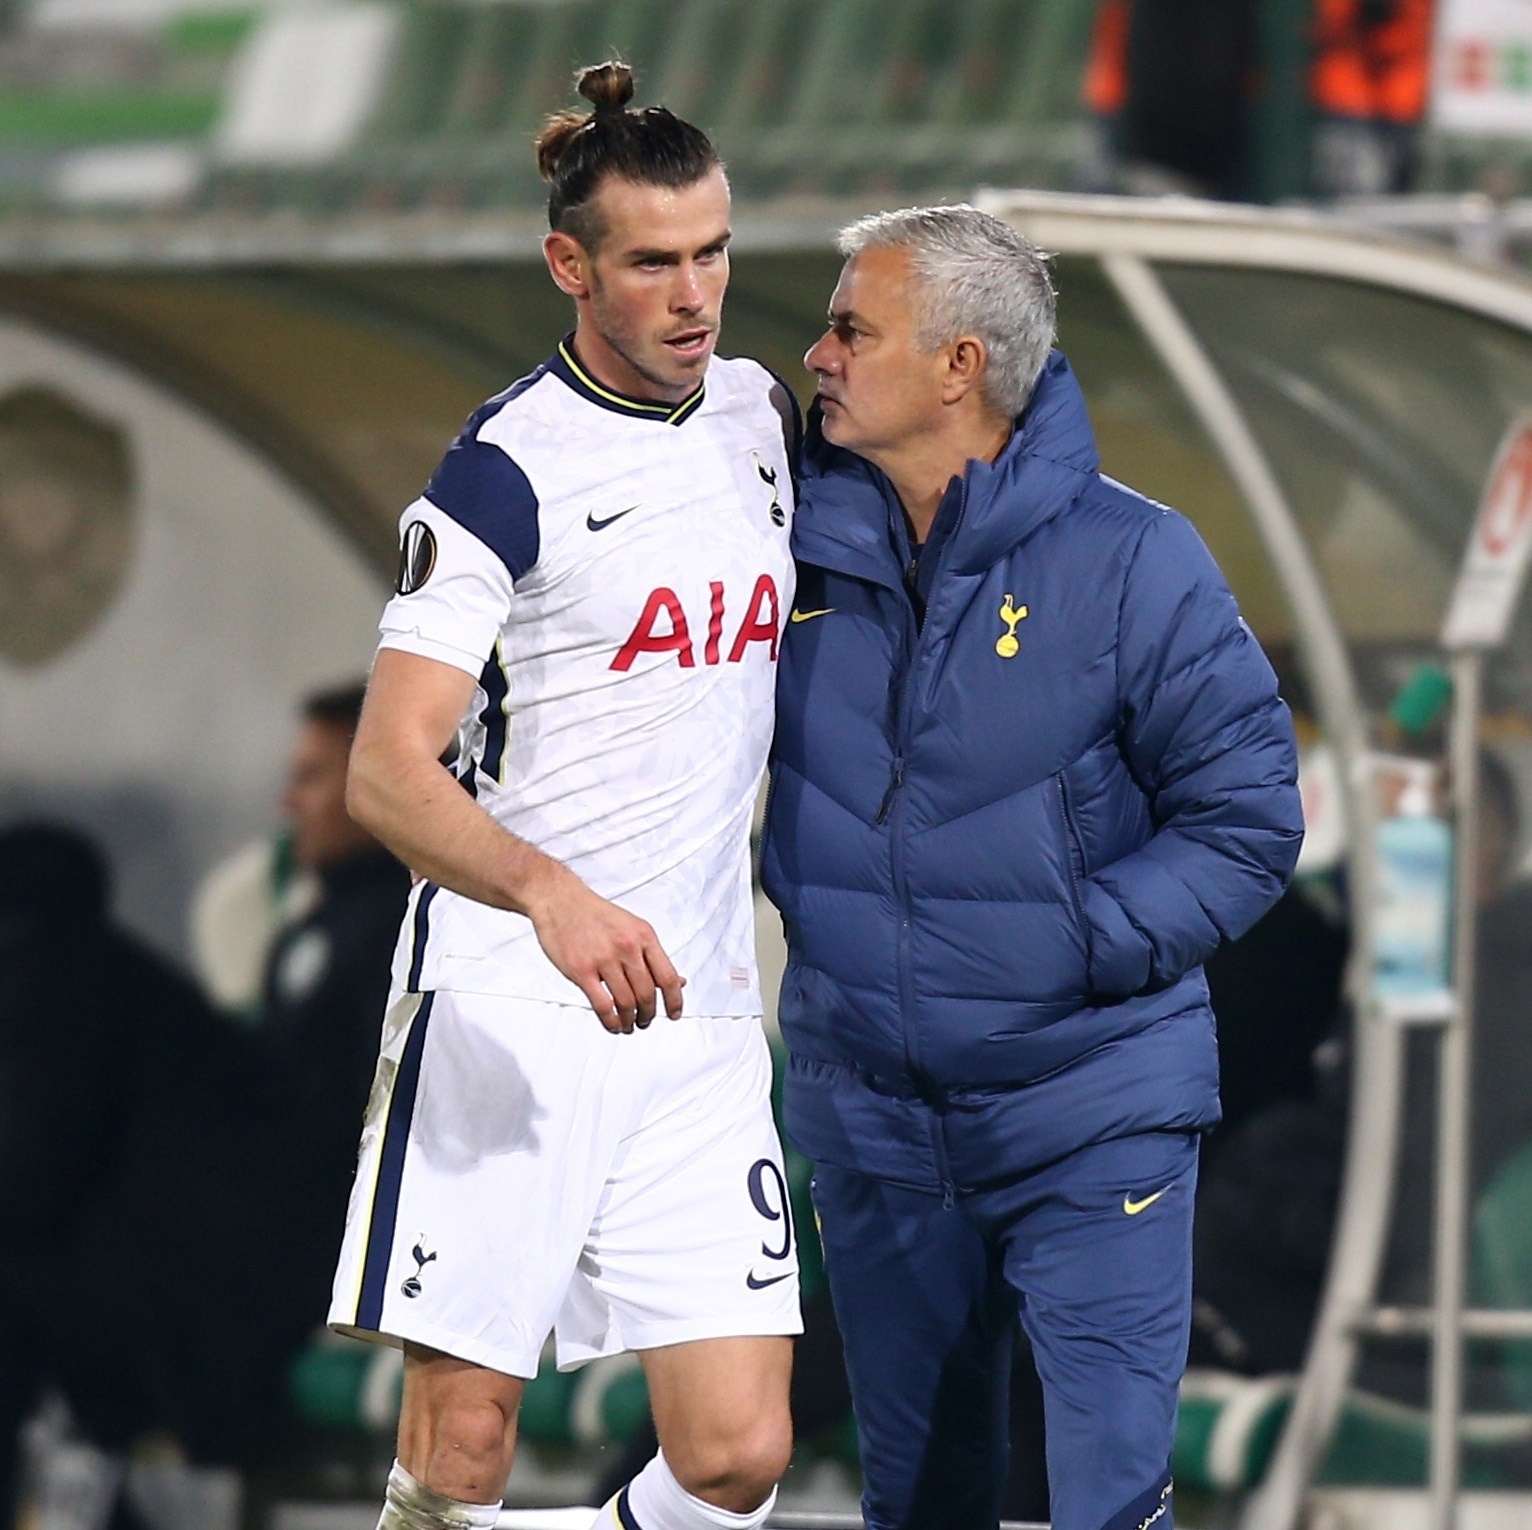 Bale alfineta Mourinho após goleada: “Precisava ter série de jogos